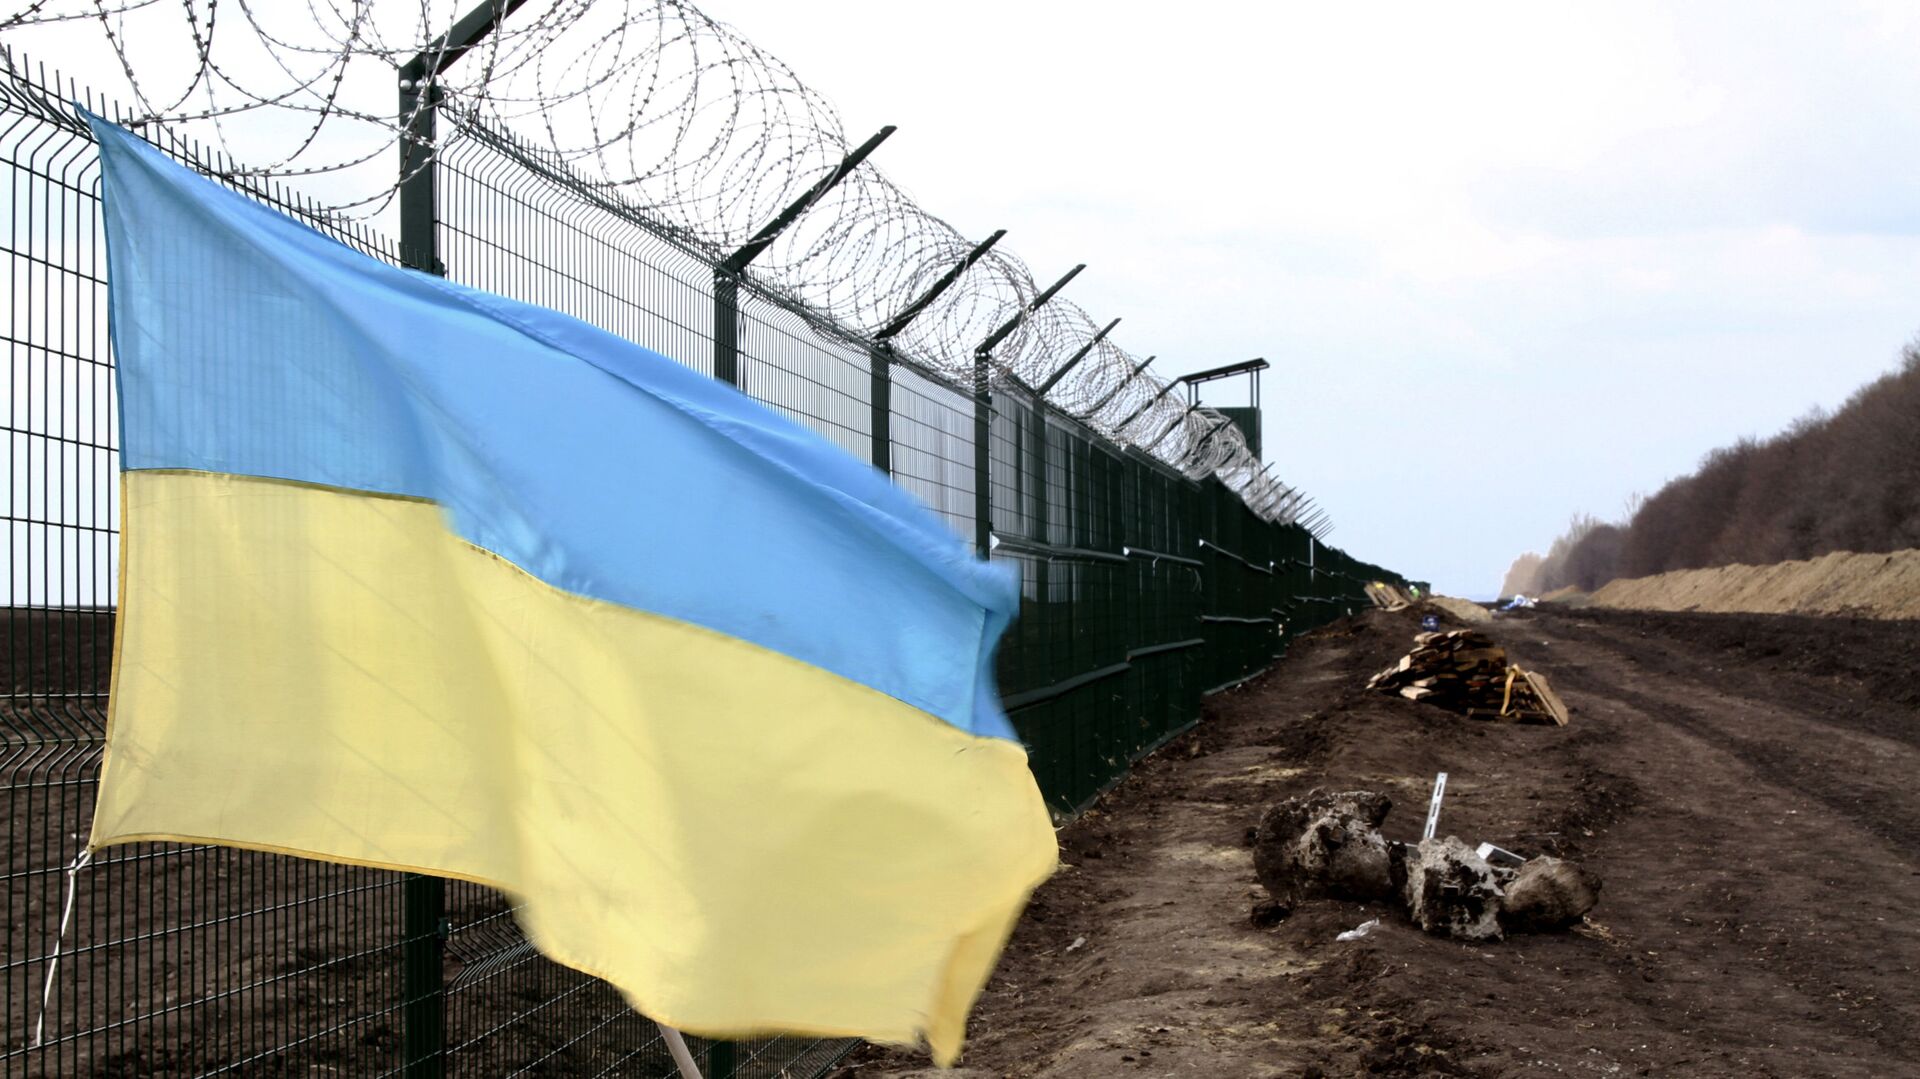  Украинский государственный флаг прикреплен к забору на украинско-российской границе - Sputnik Таджикистан, 1920, 20.08.2021